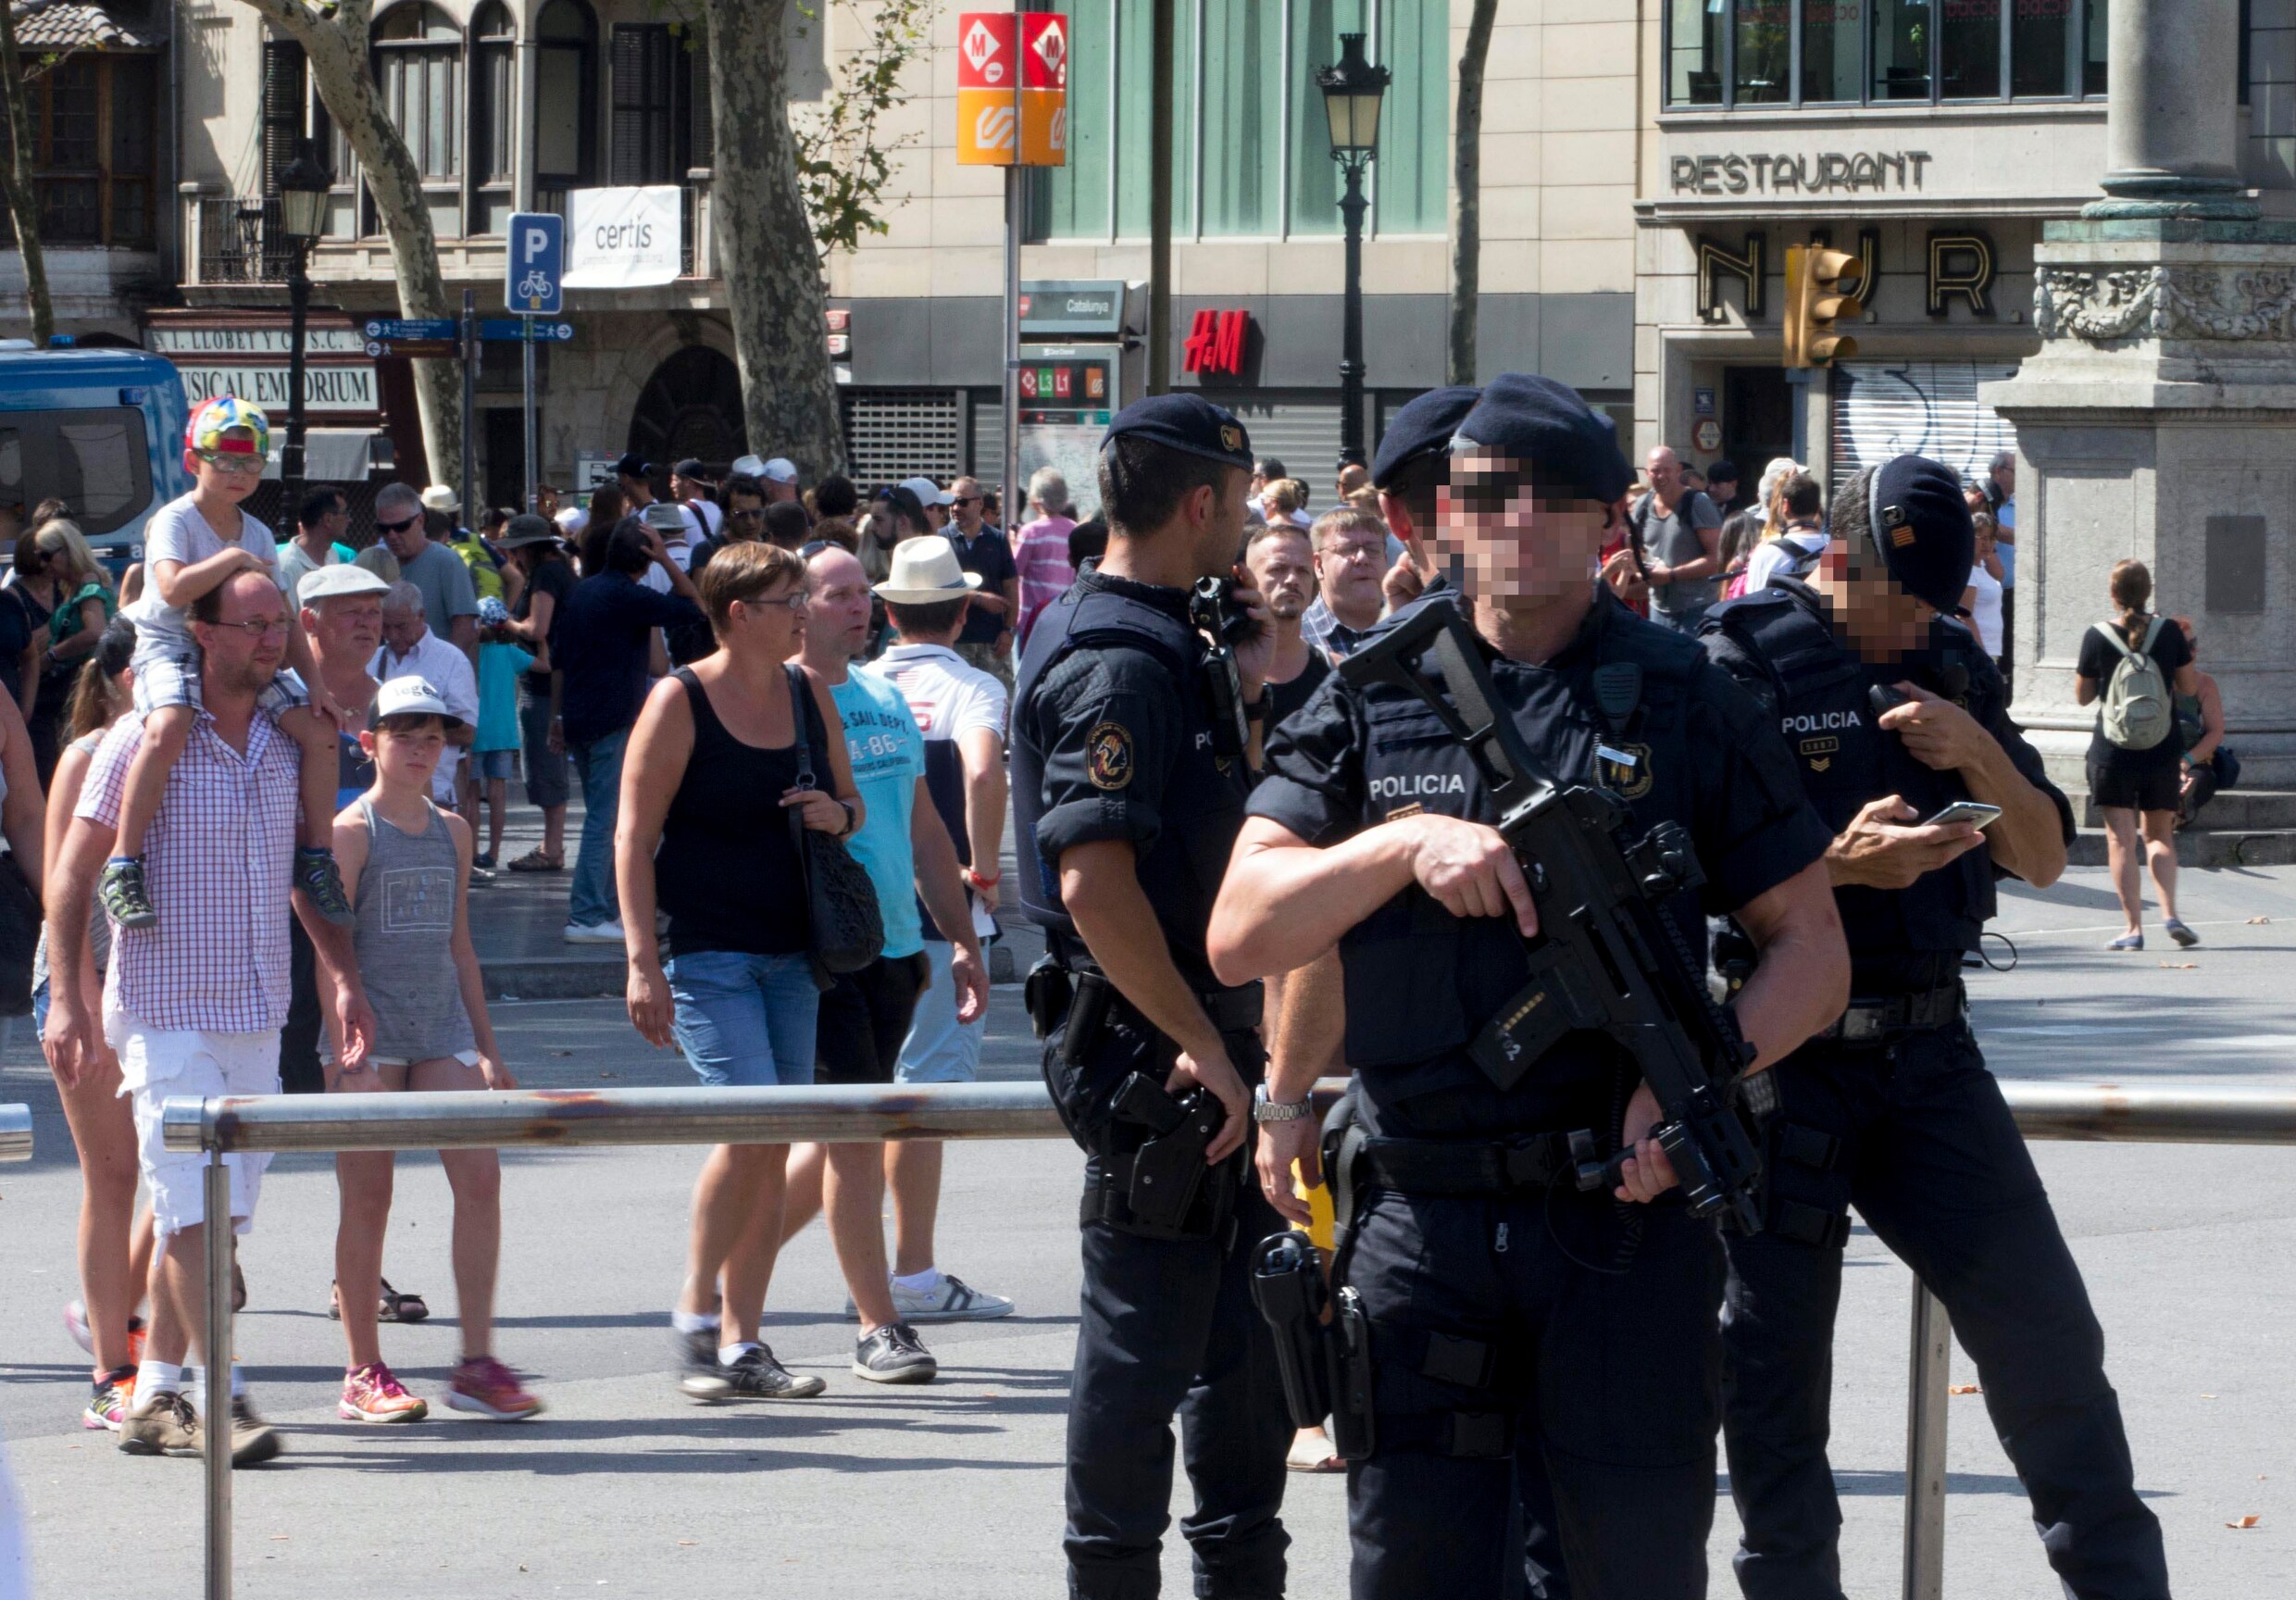 "Terroristen willen paniek zaaien door terreurdaad zo lang mogelijk te rekken"